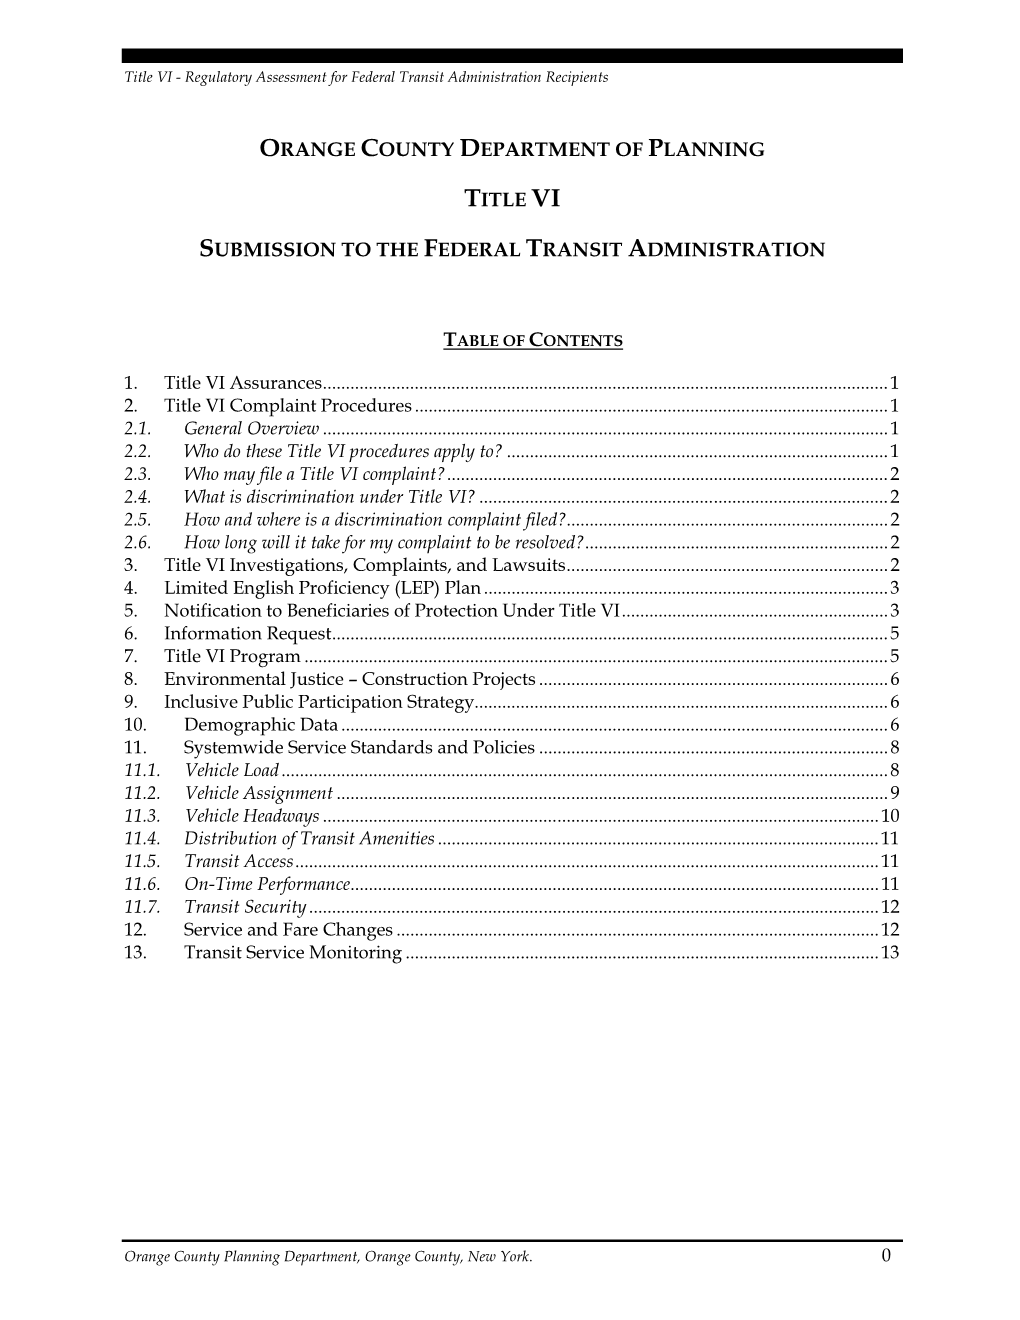 Title VI Plan (PDF)